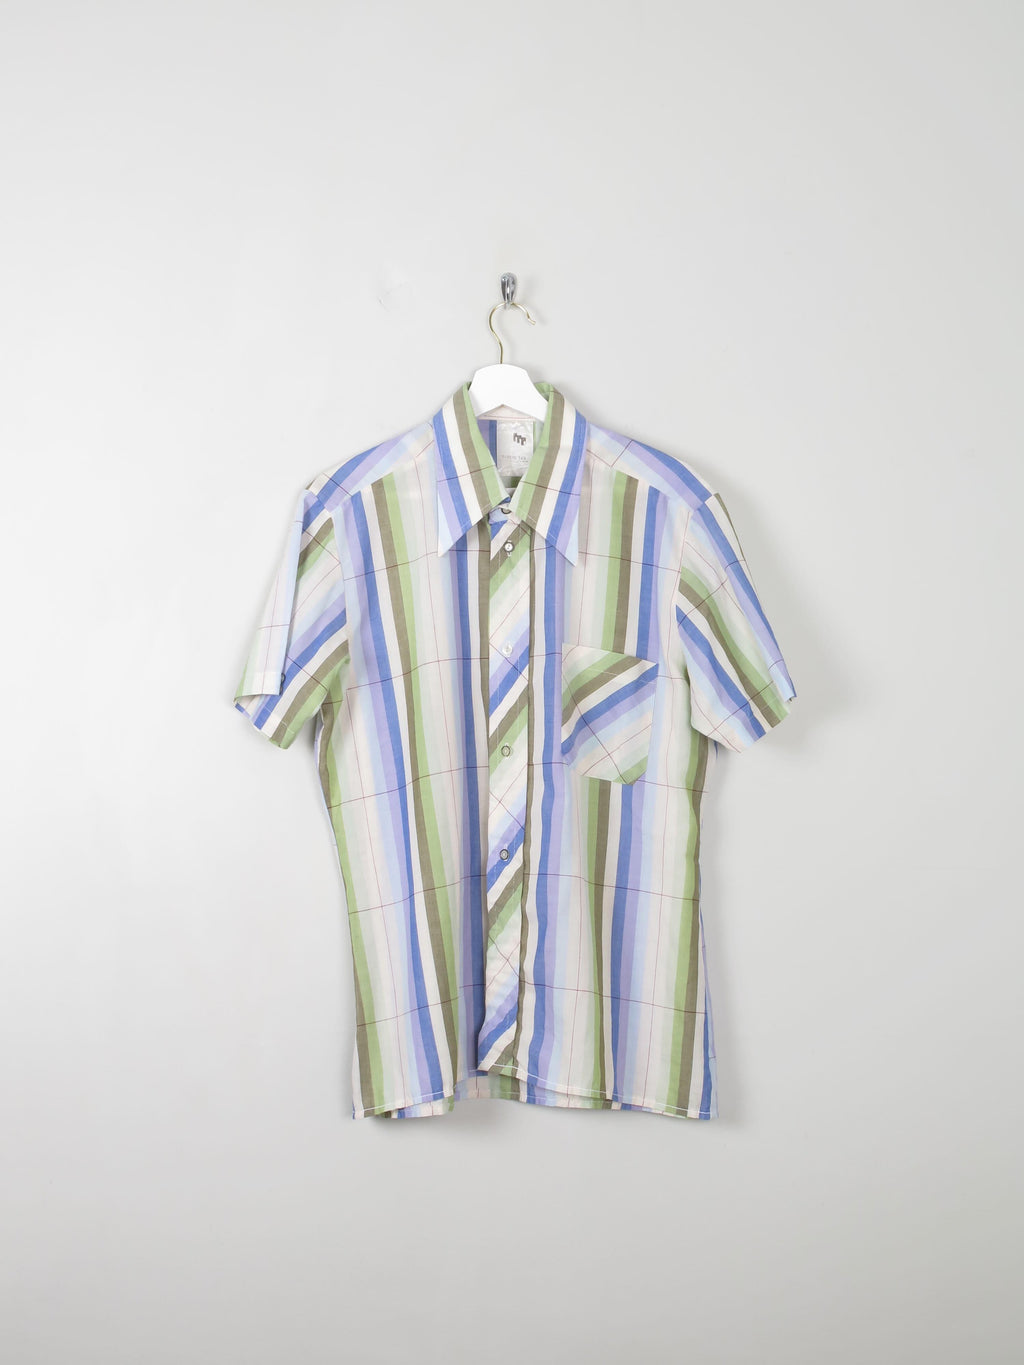 Men's Vintage Striped Shirt L - The Harlequin